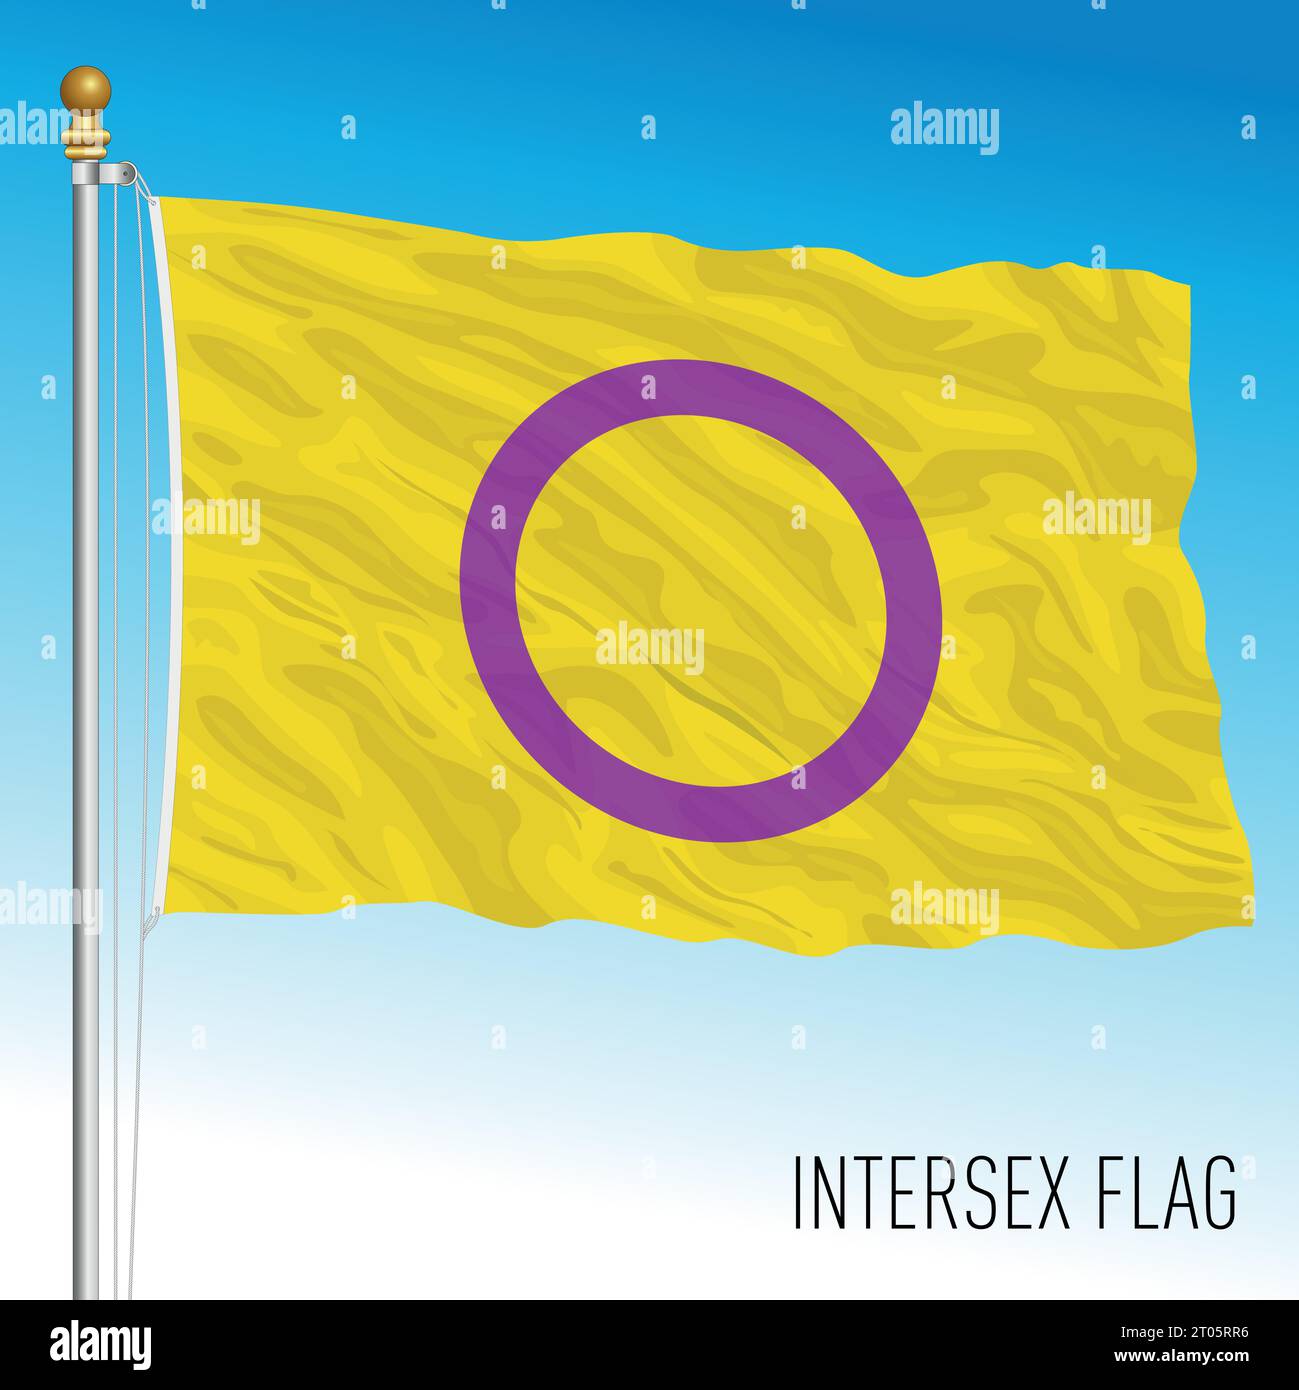 Intersex movement waving flag, international symbol, vector illustration Stock Vector